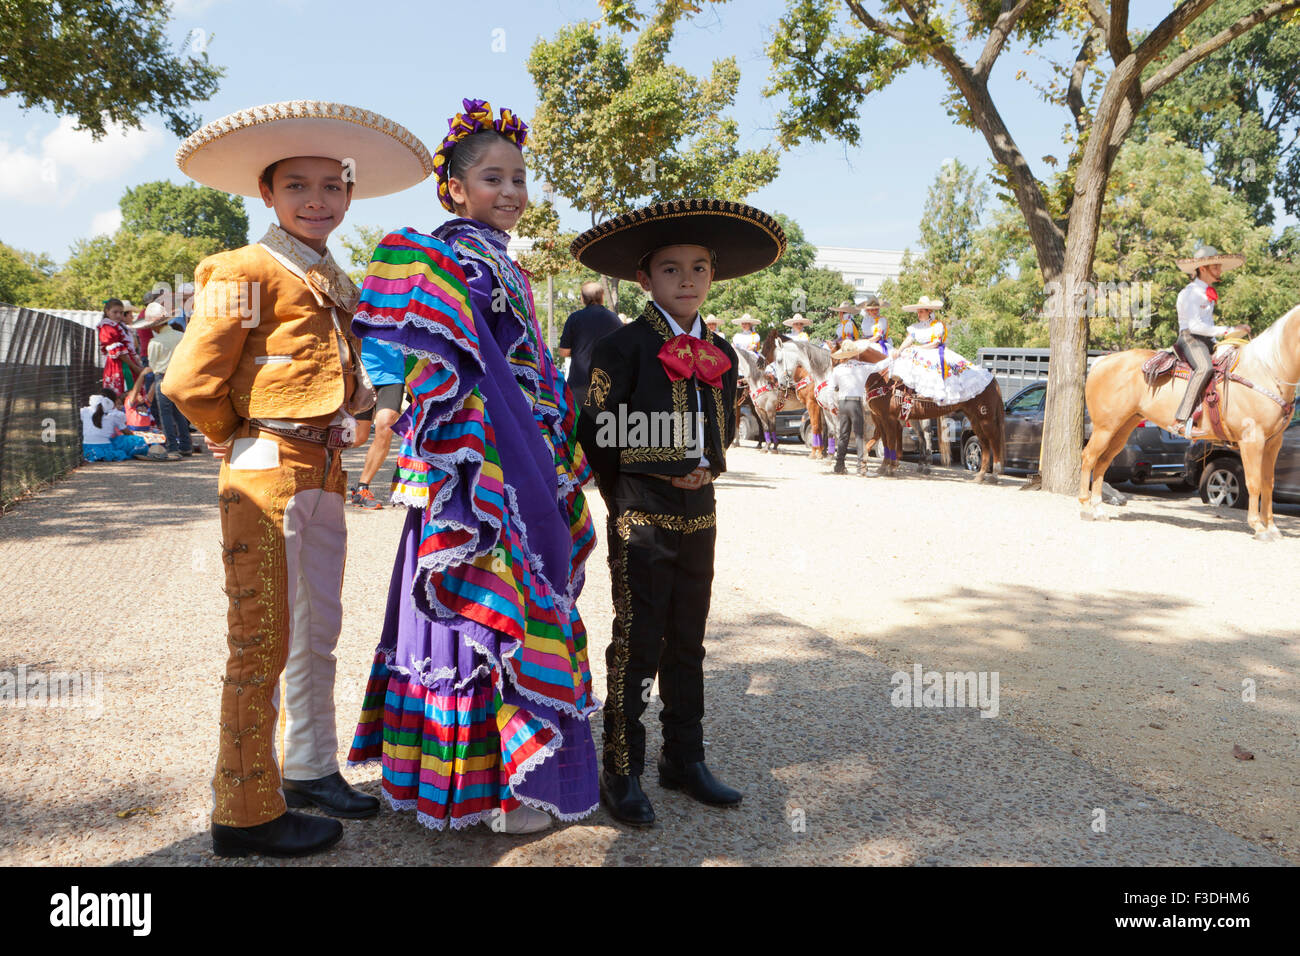 Les enfants mexicains hat danseurs en costume traditionnel - USA Banque D'Images